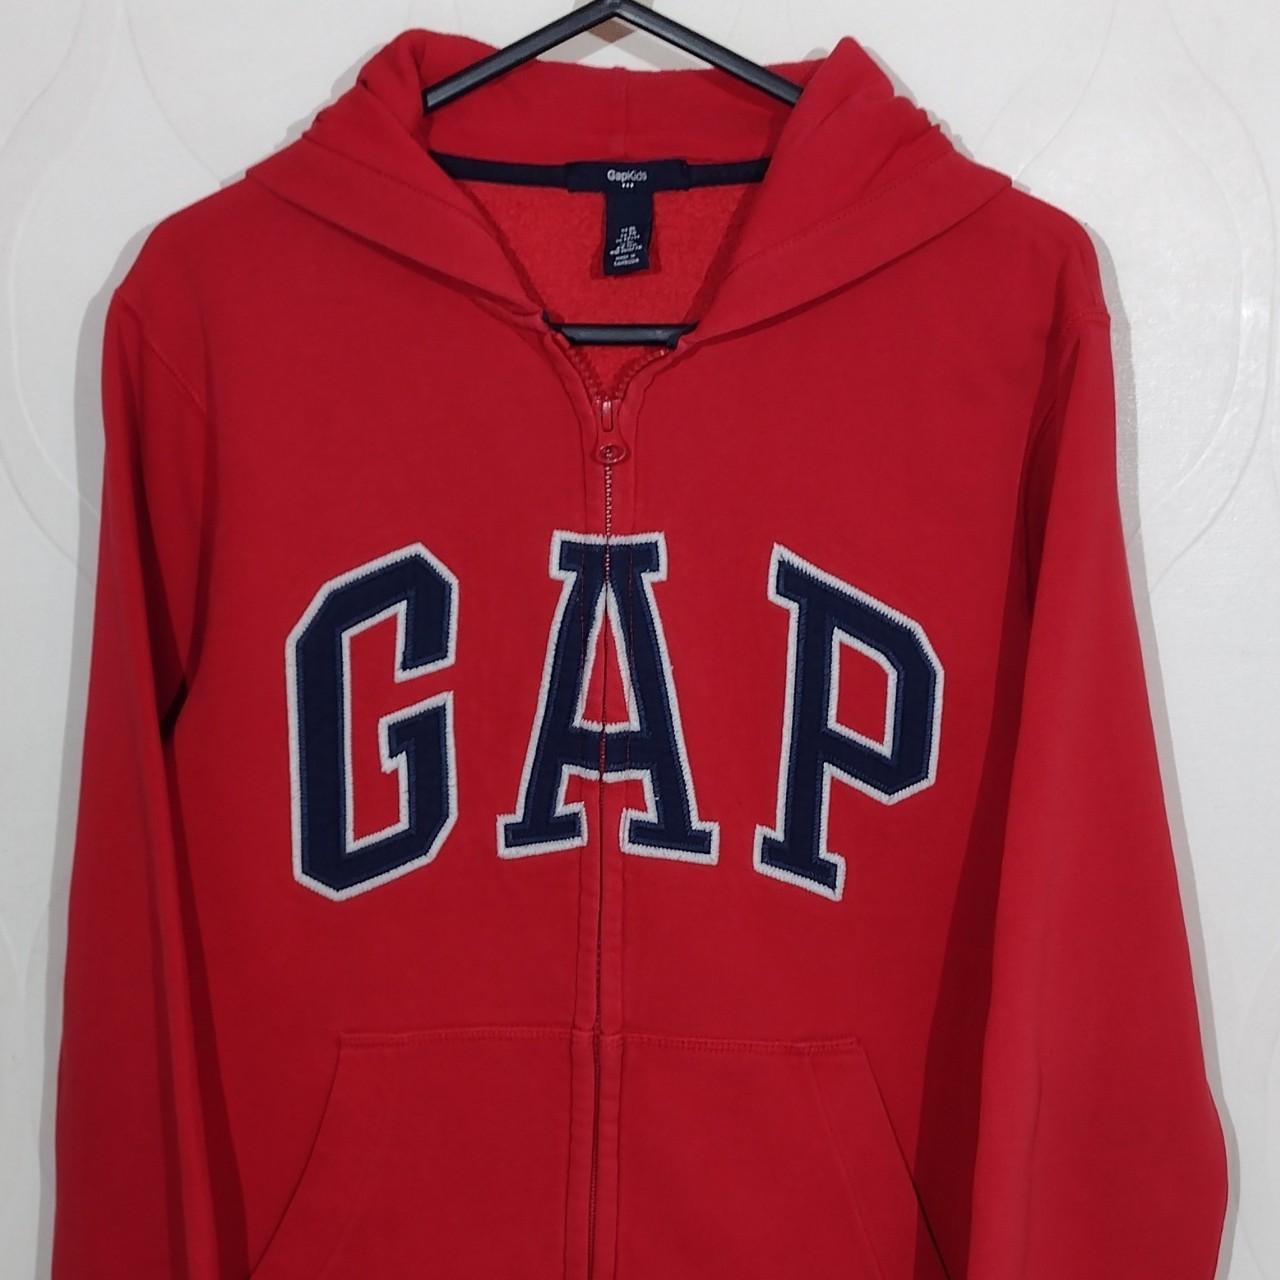 Gap Big Logo Hoodie Jacket Size 12 Years Red Gap... - Depop